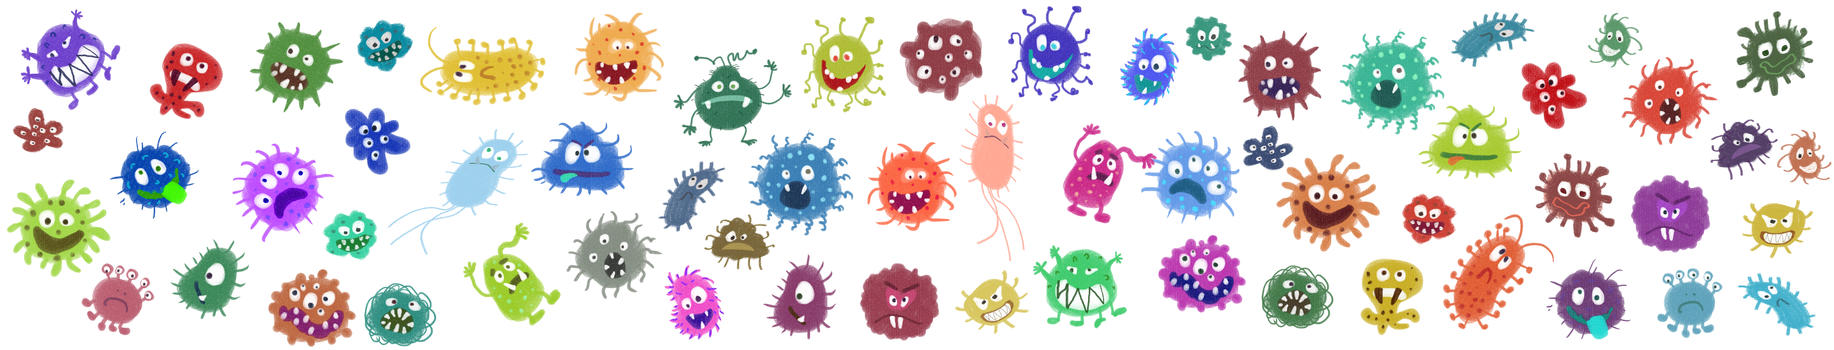 细菌病毒元素图片素材免费下载